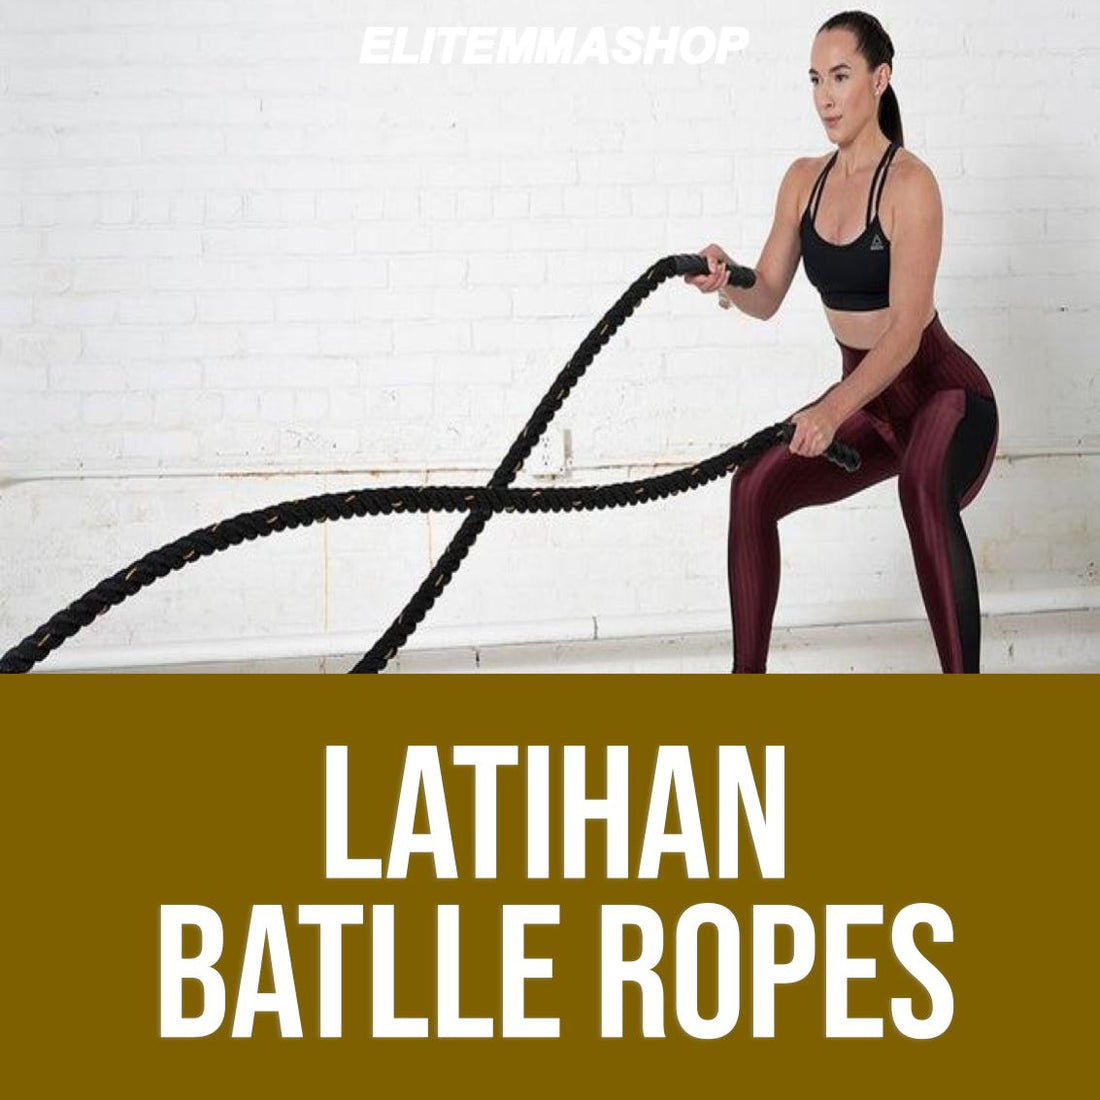 Yuk coba latihan battle ropes dan rasakan manfaatnya!